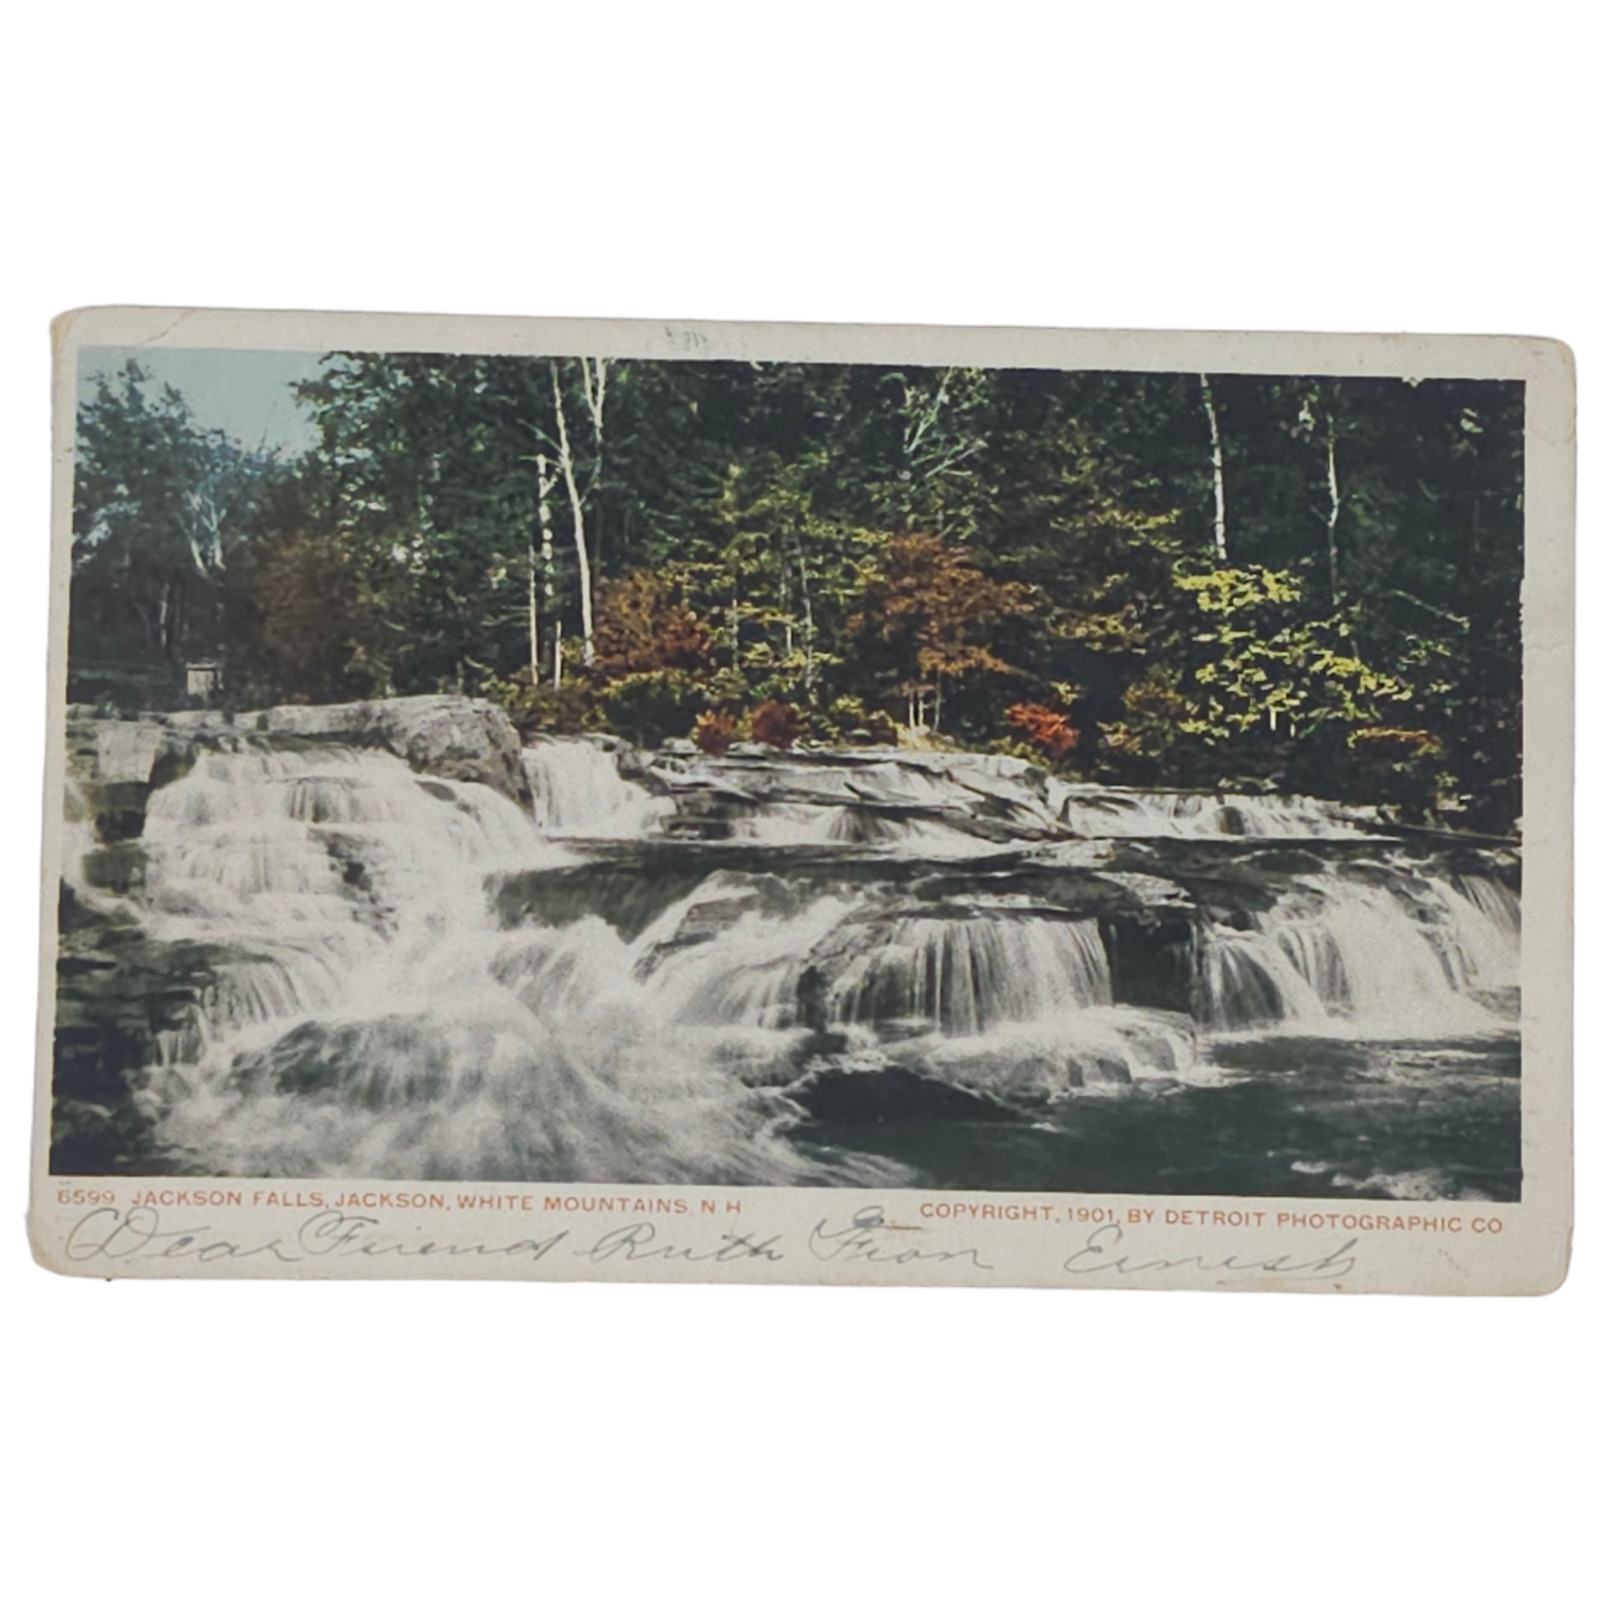 1906 Jackson Falls Jackson White Mountains N.H. Postcard Vintage New Hampshire